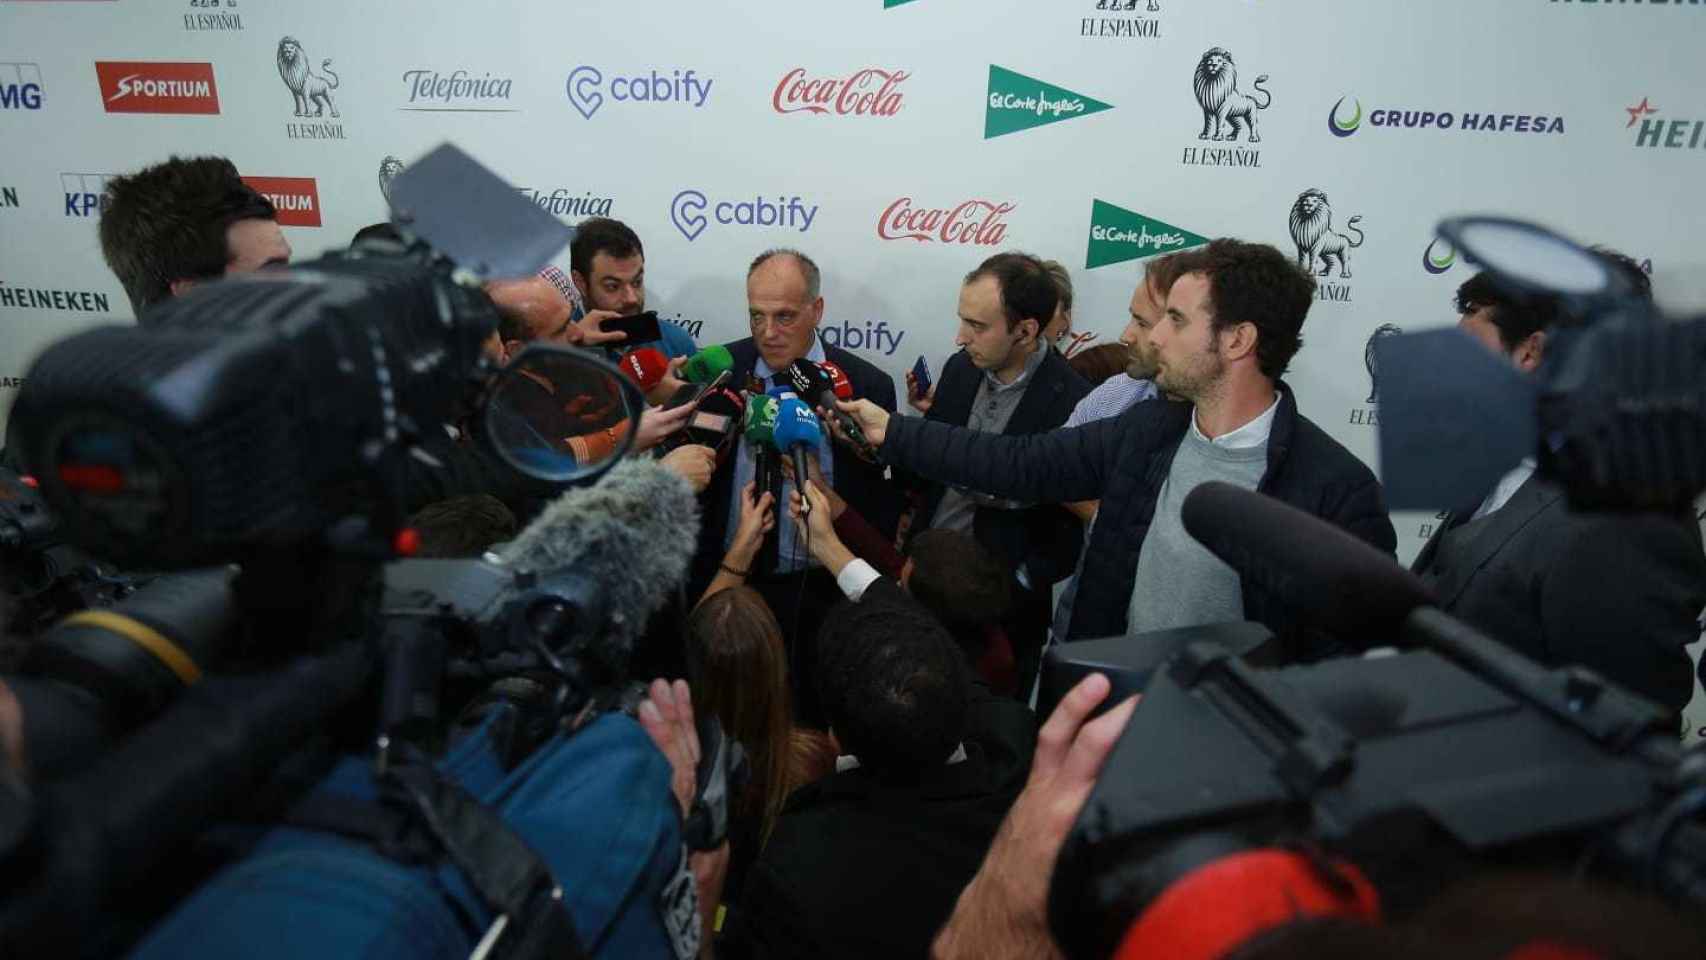 Masiva presencia de medios de comunicación en la fiesta de Los Leones de EL ESPAÑOL 2018.